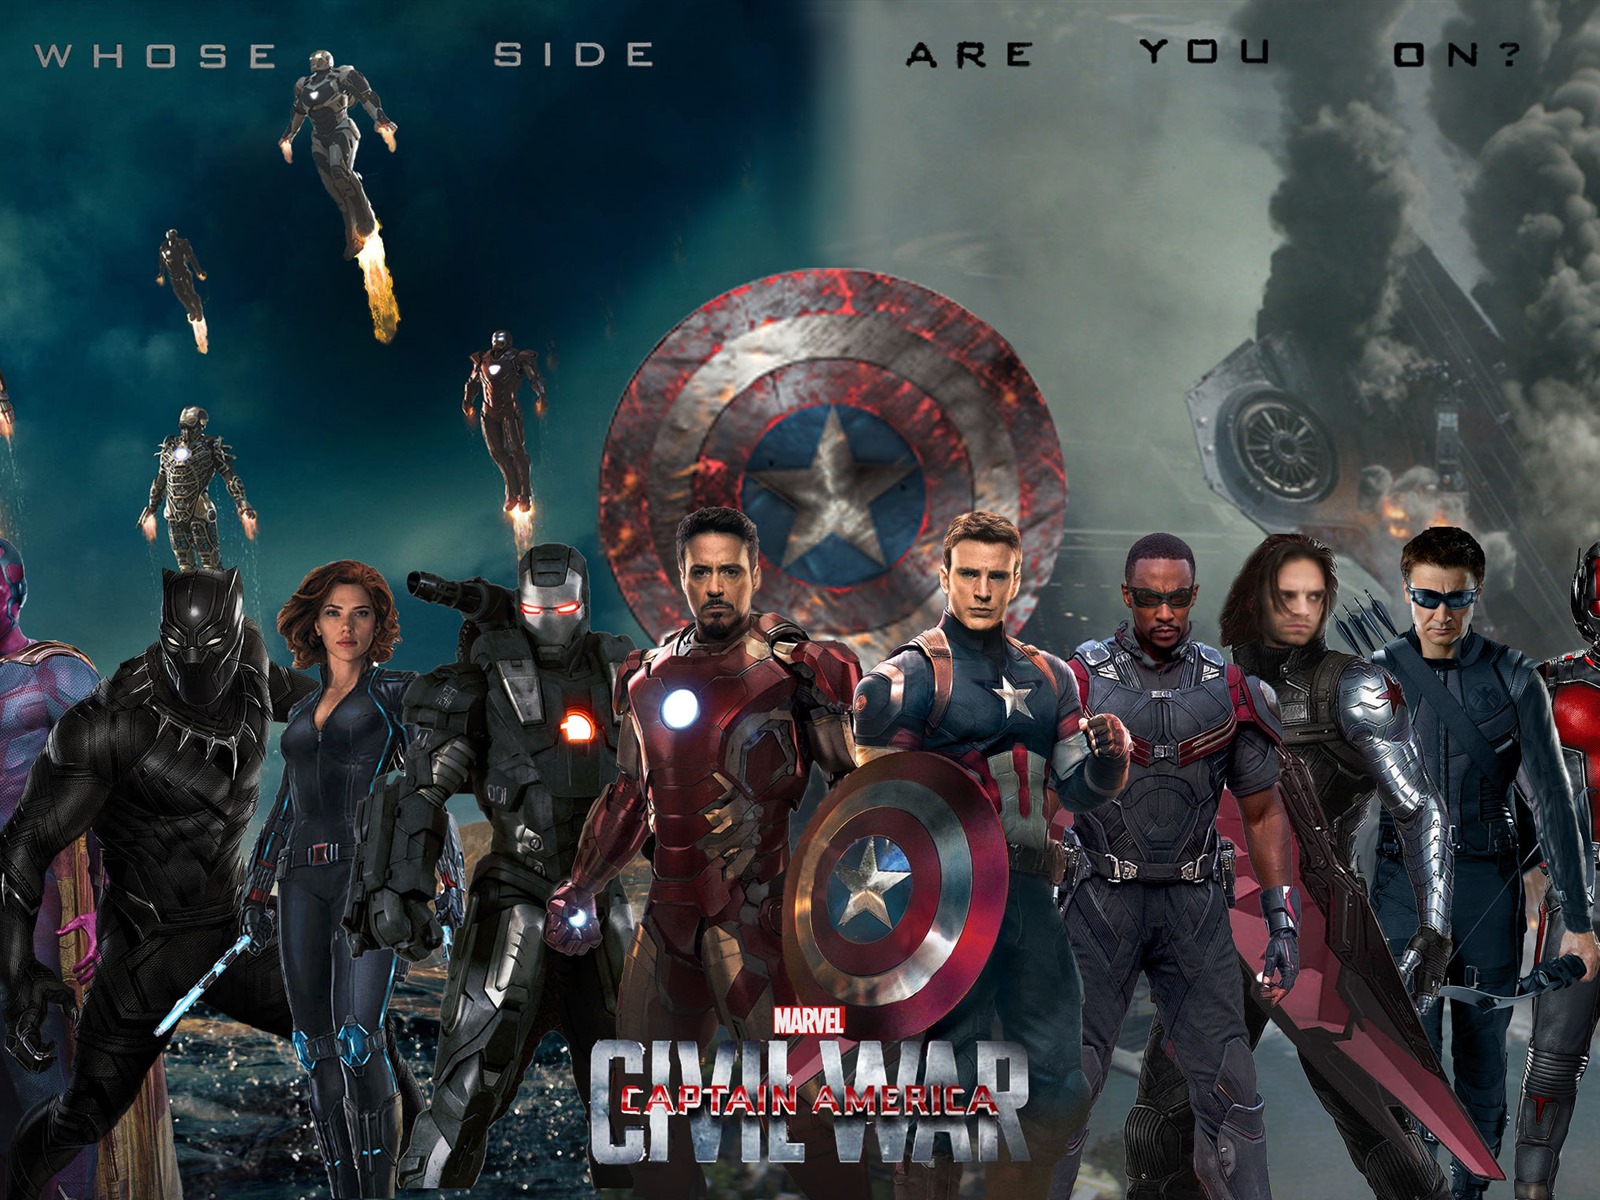 Capitán América: guerra civil, fondos de pantalla de alta definición de películas #11 - 1600x1200